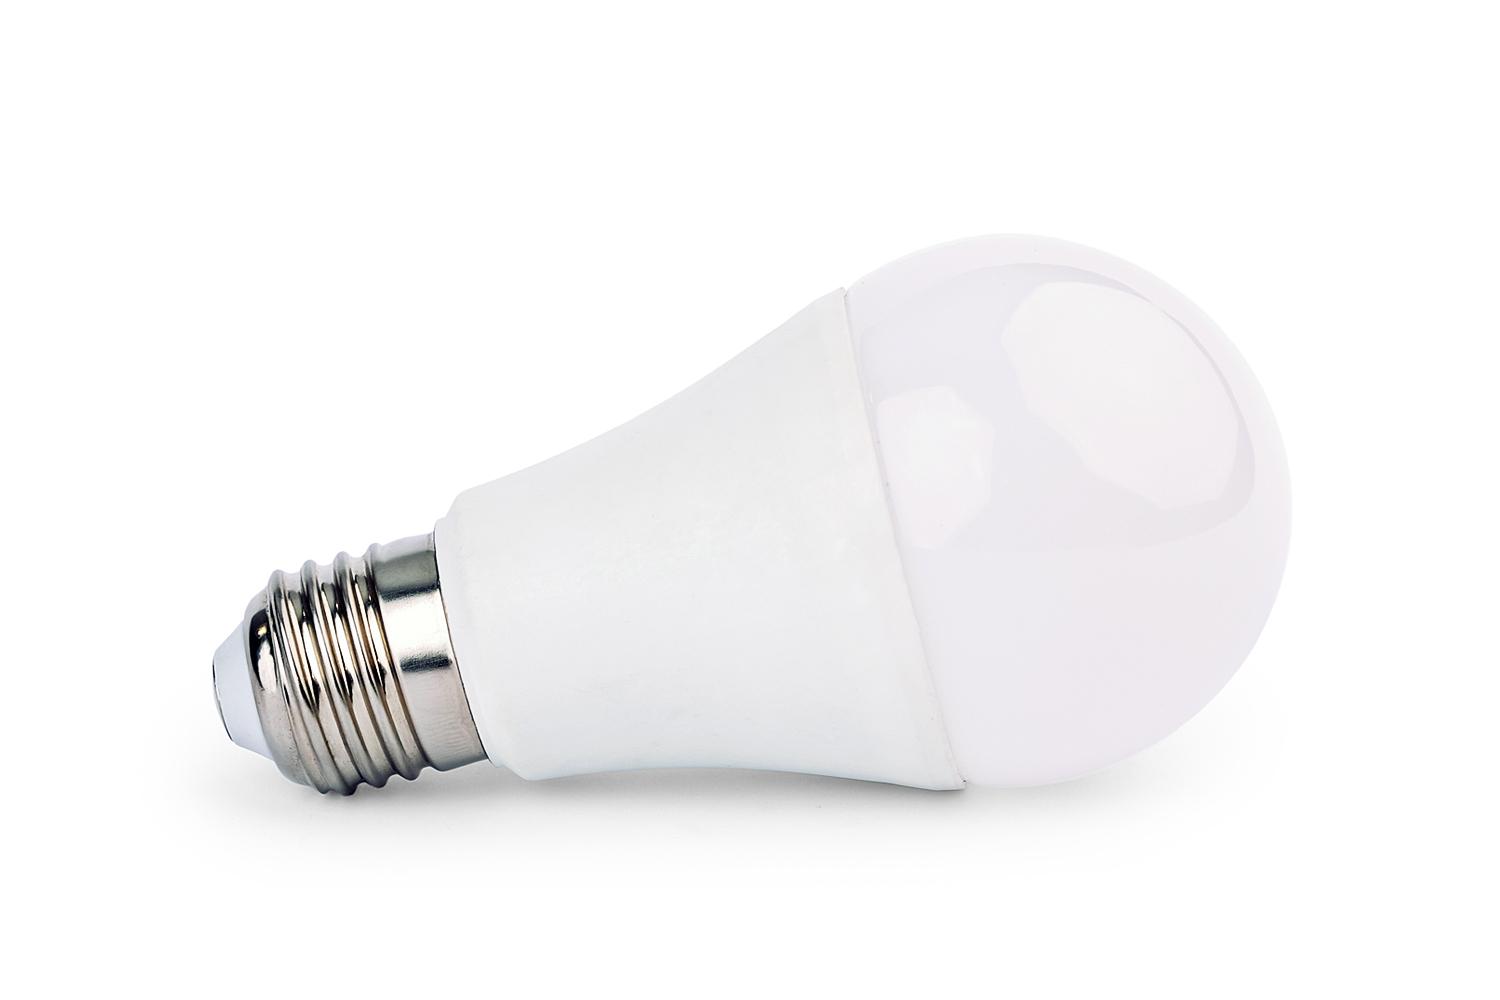 Berge LED žárovka ECOlight - E27 - 10W - 800Lm - neutrální bílá